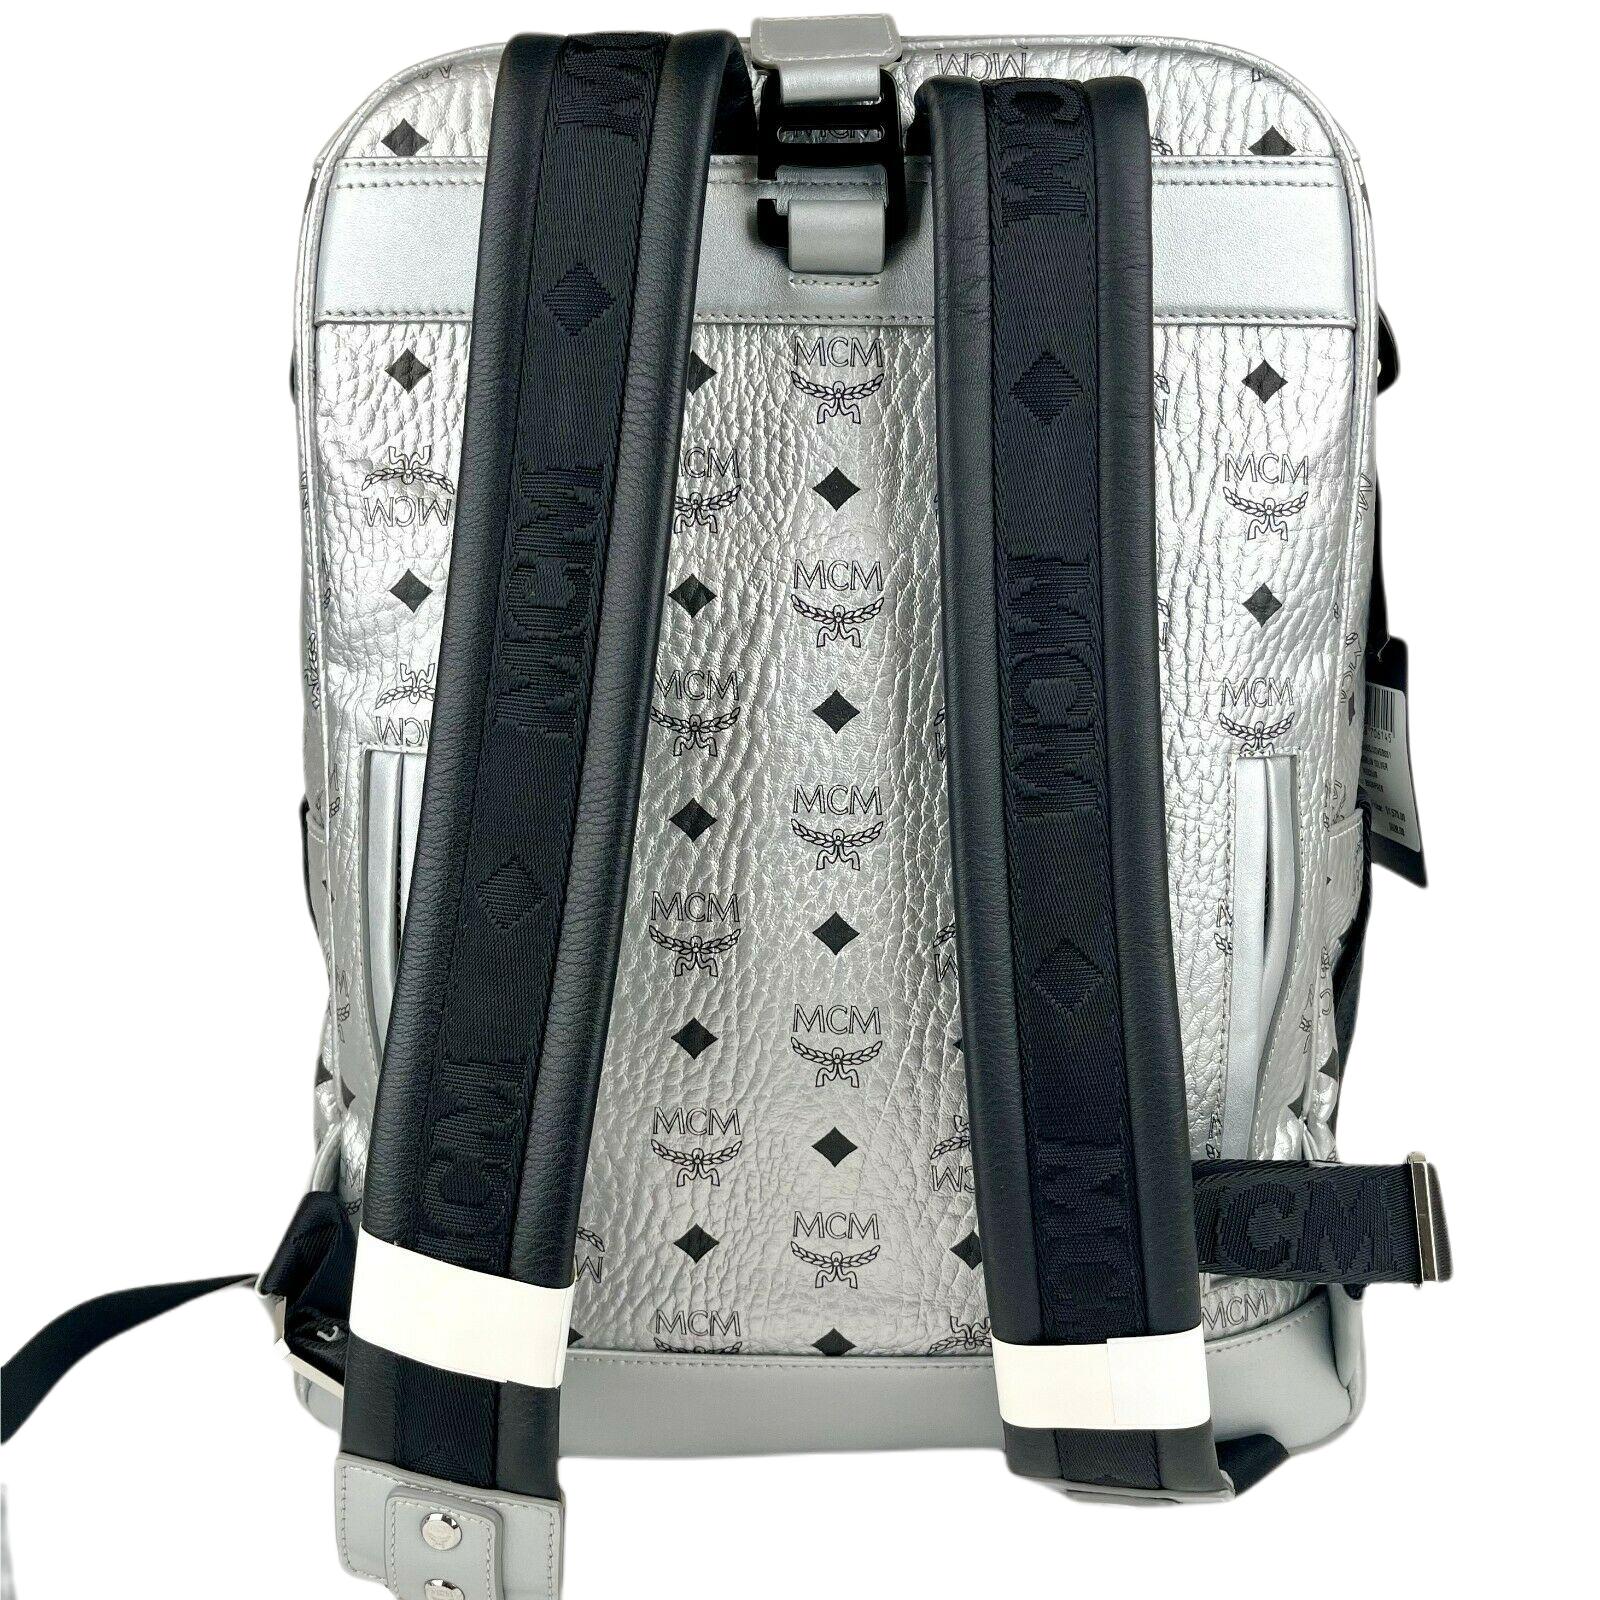 MCM 'Jemison' backpack with belt bag, Men's Bags